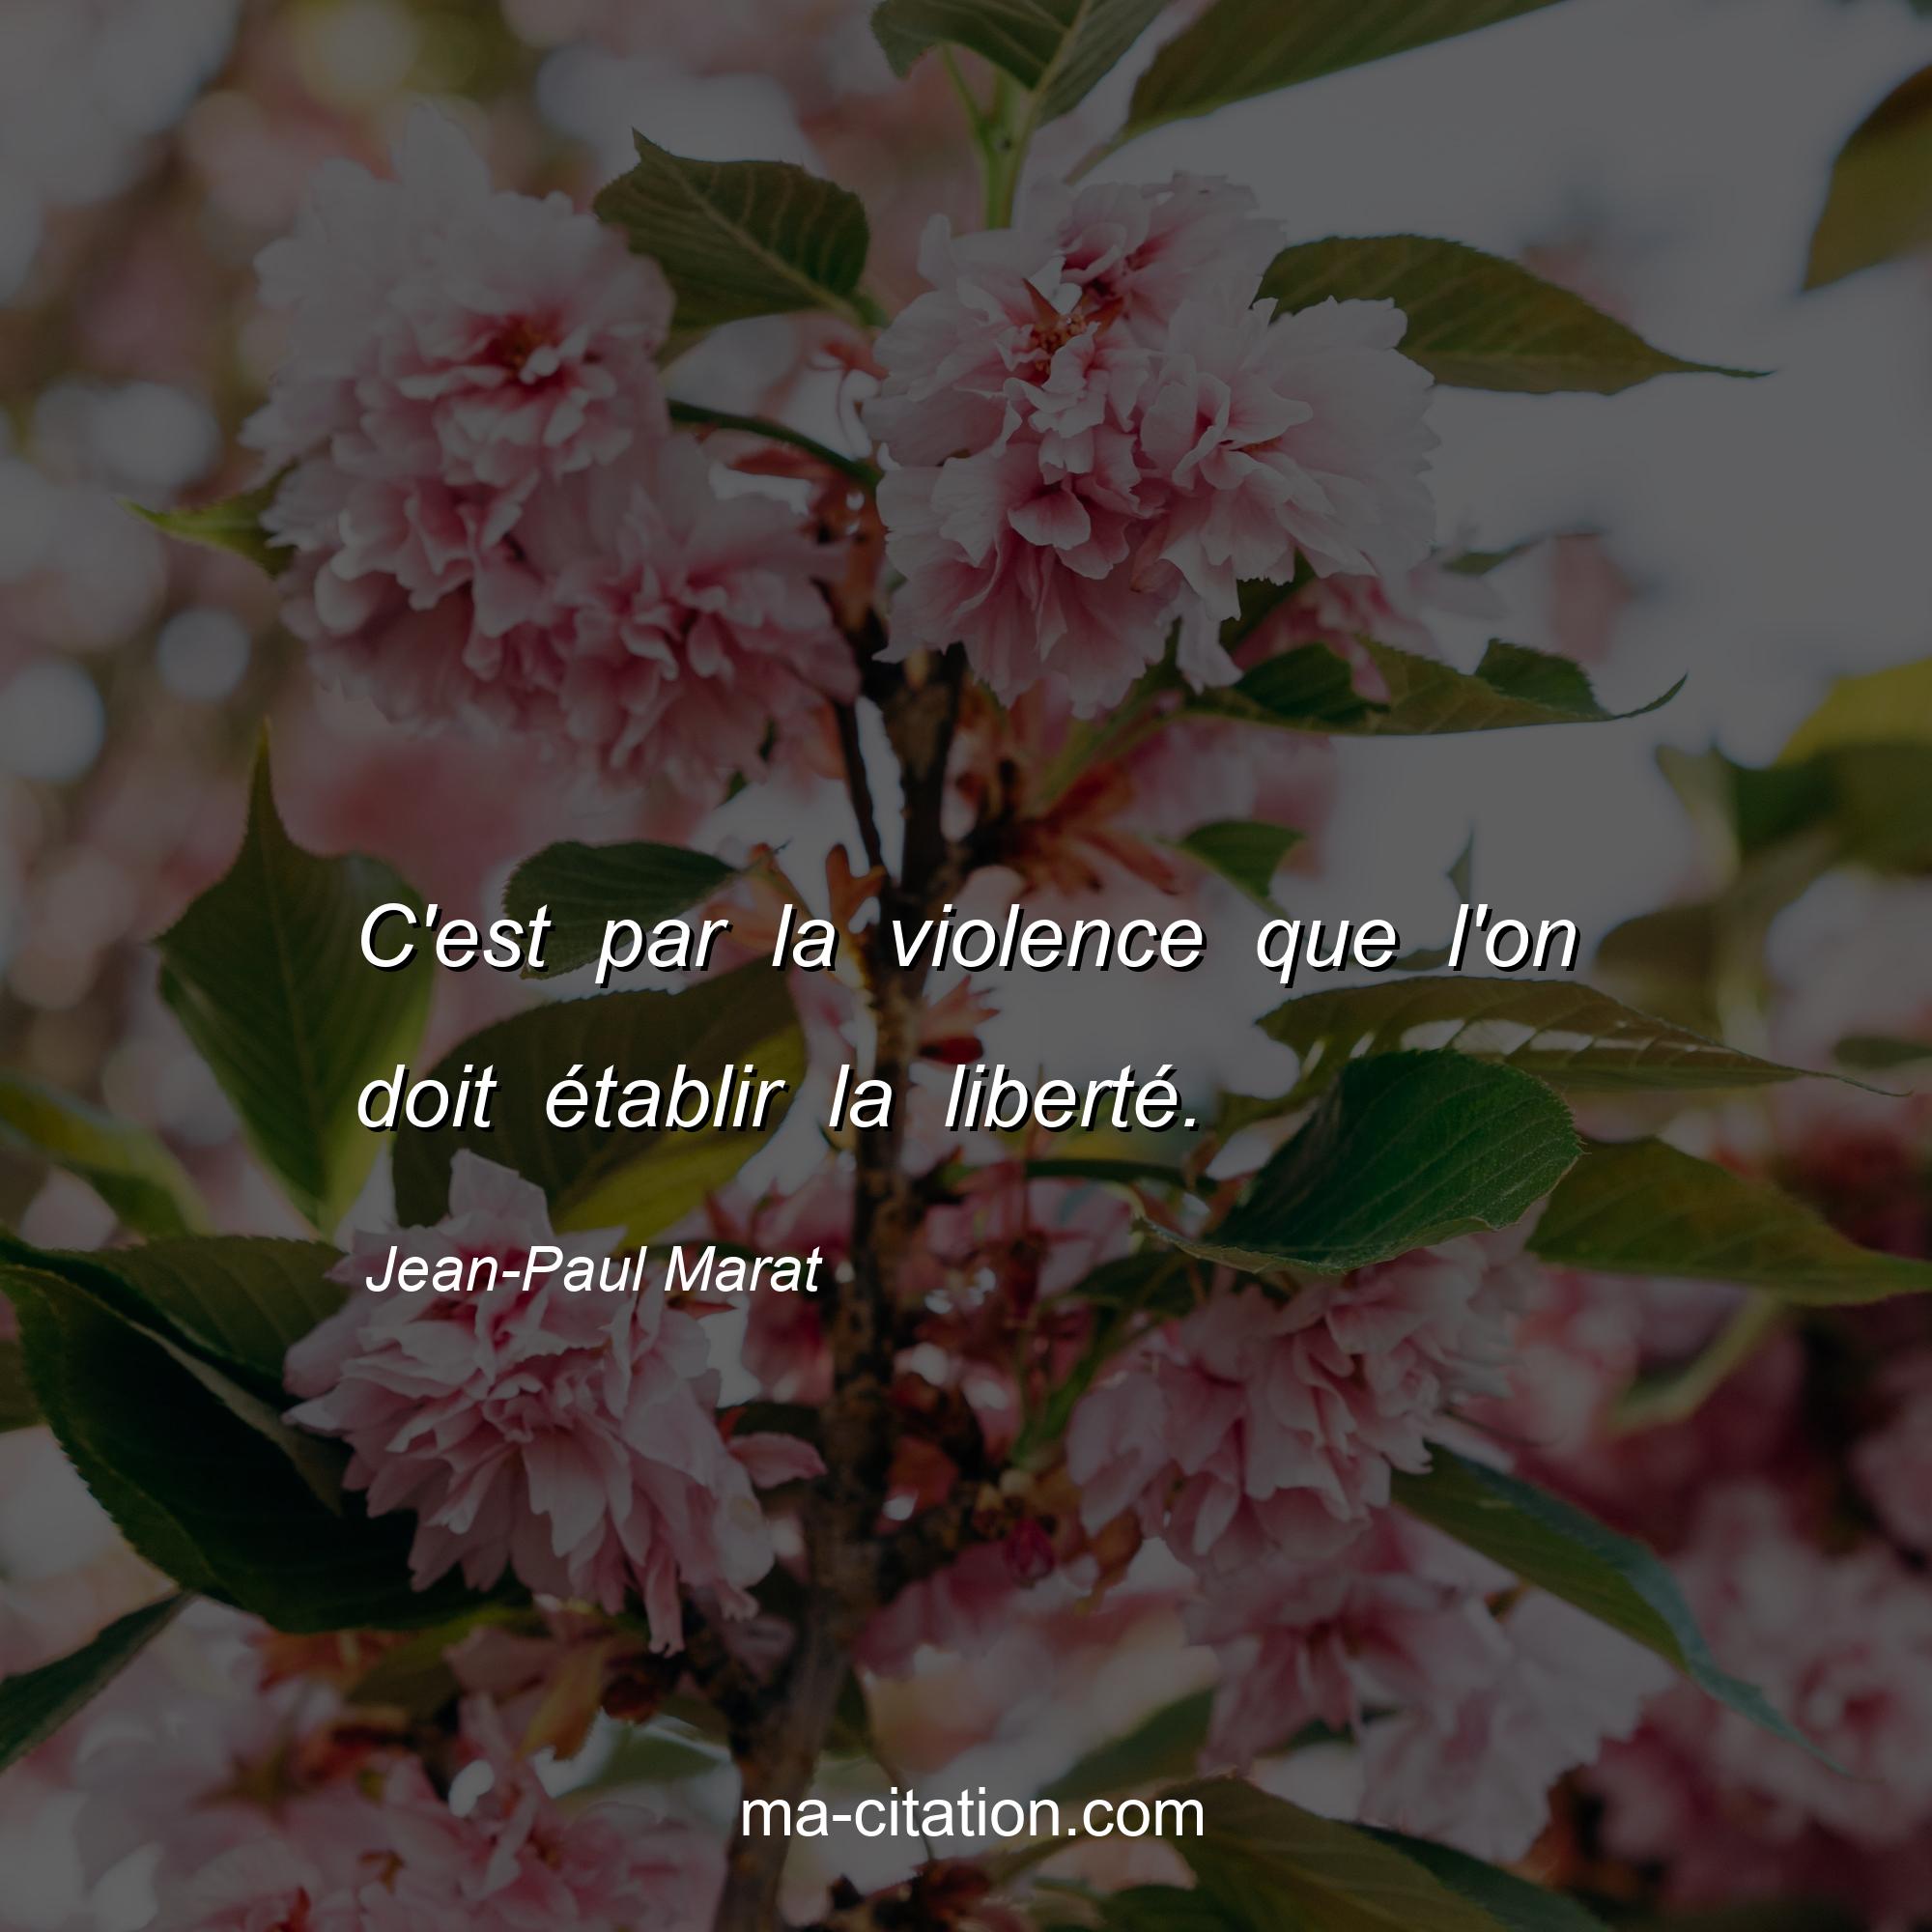 Jean-Paul Marat : C'est par la violence que l'on doit établir la liberté.